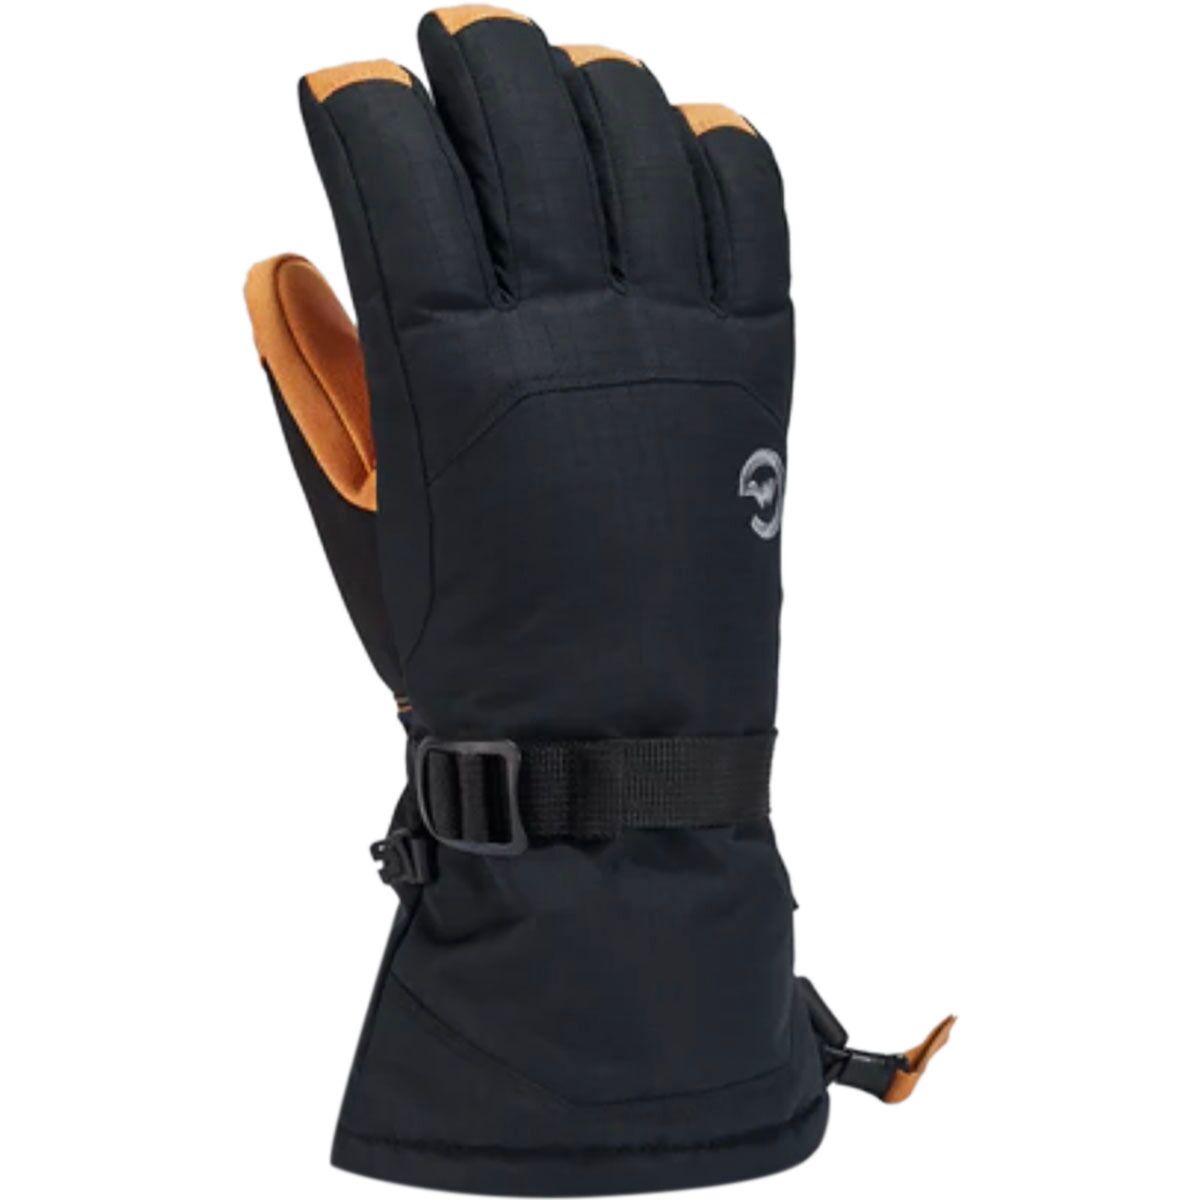 Gordini Foundation Glove - Men's Black Tan